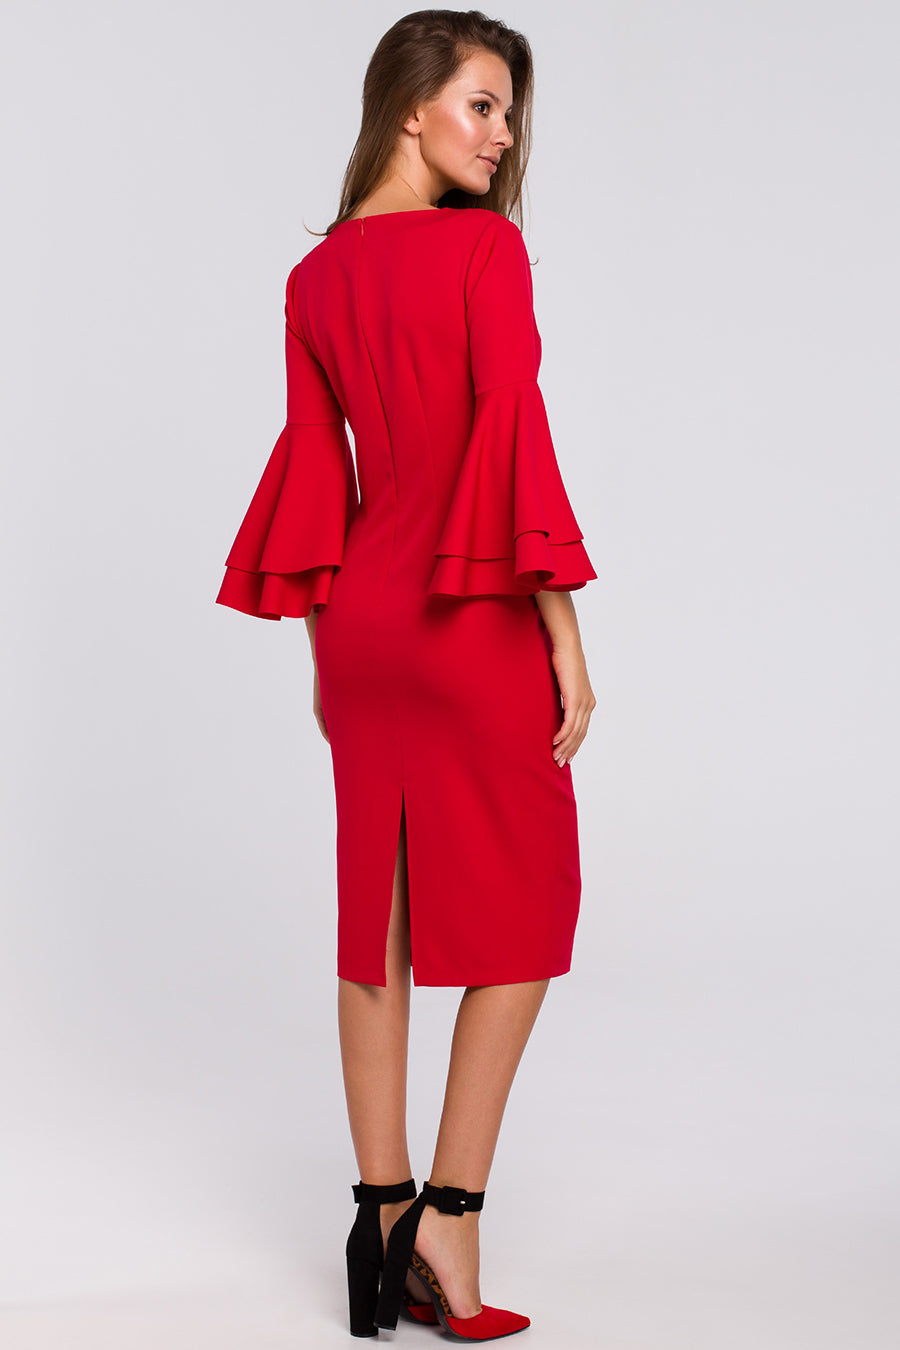 Γυναικείο φόρεμα Kadence, Κόκκινο 2